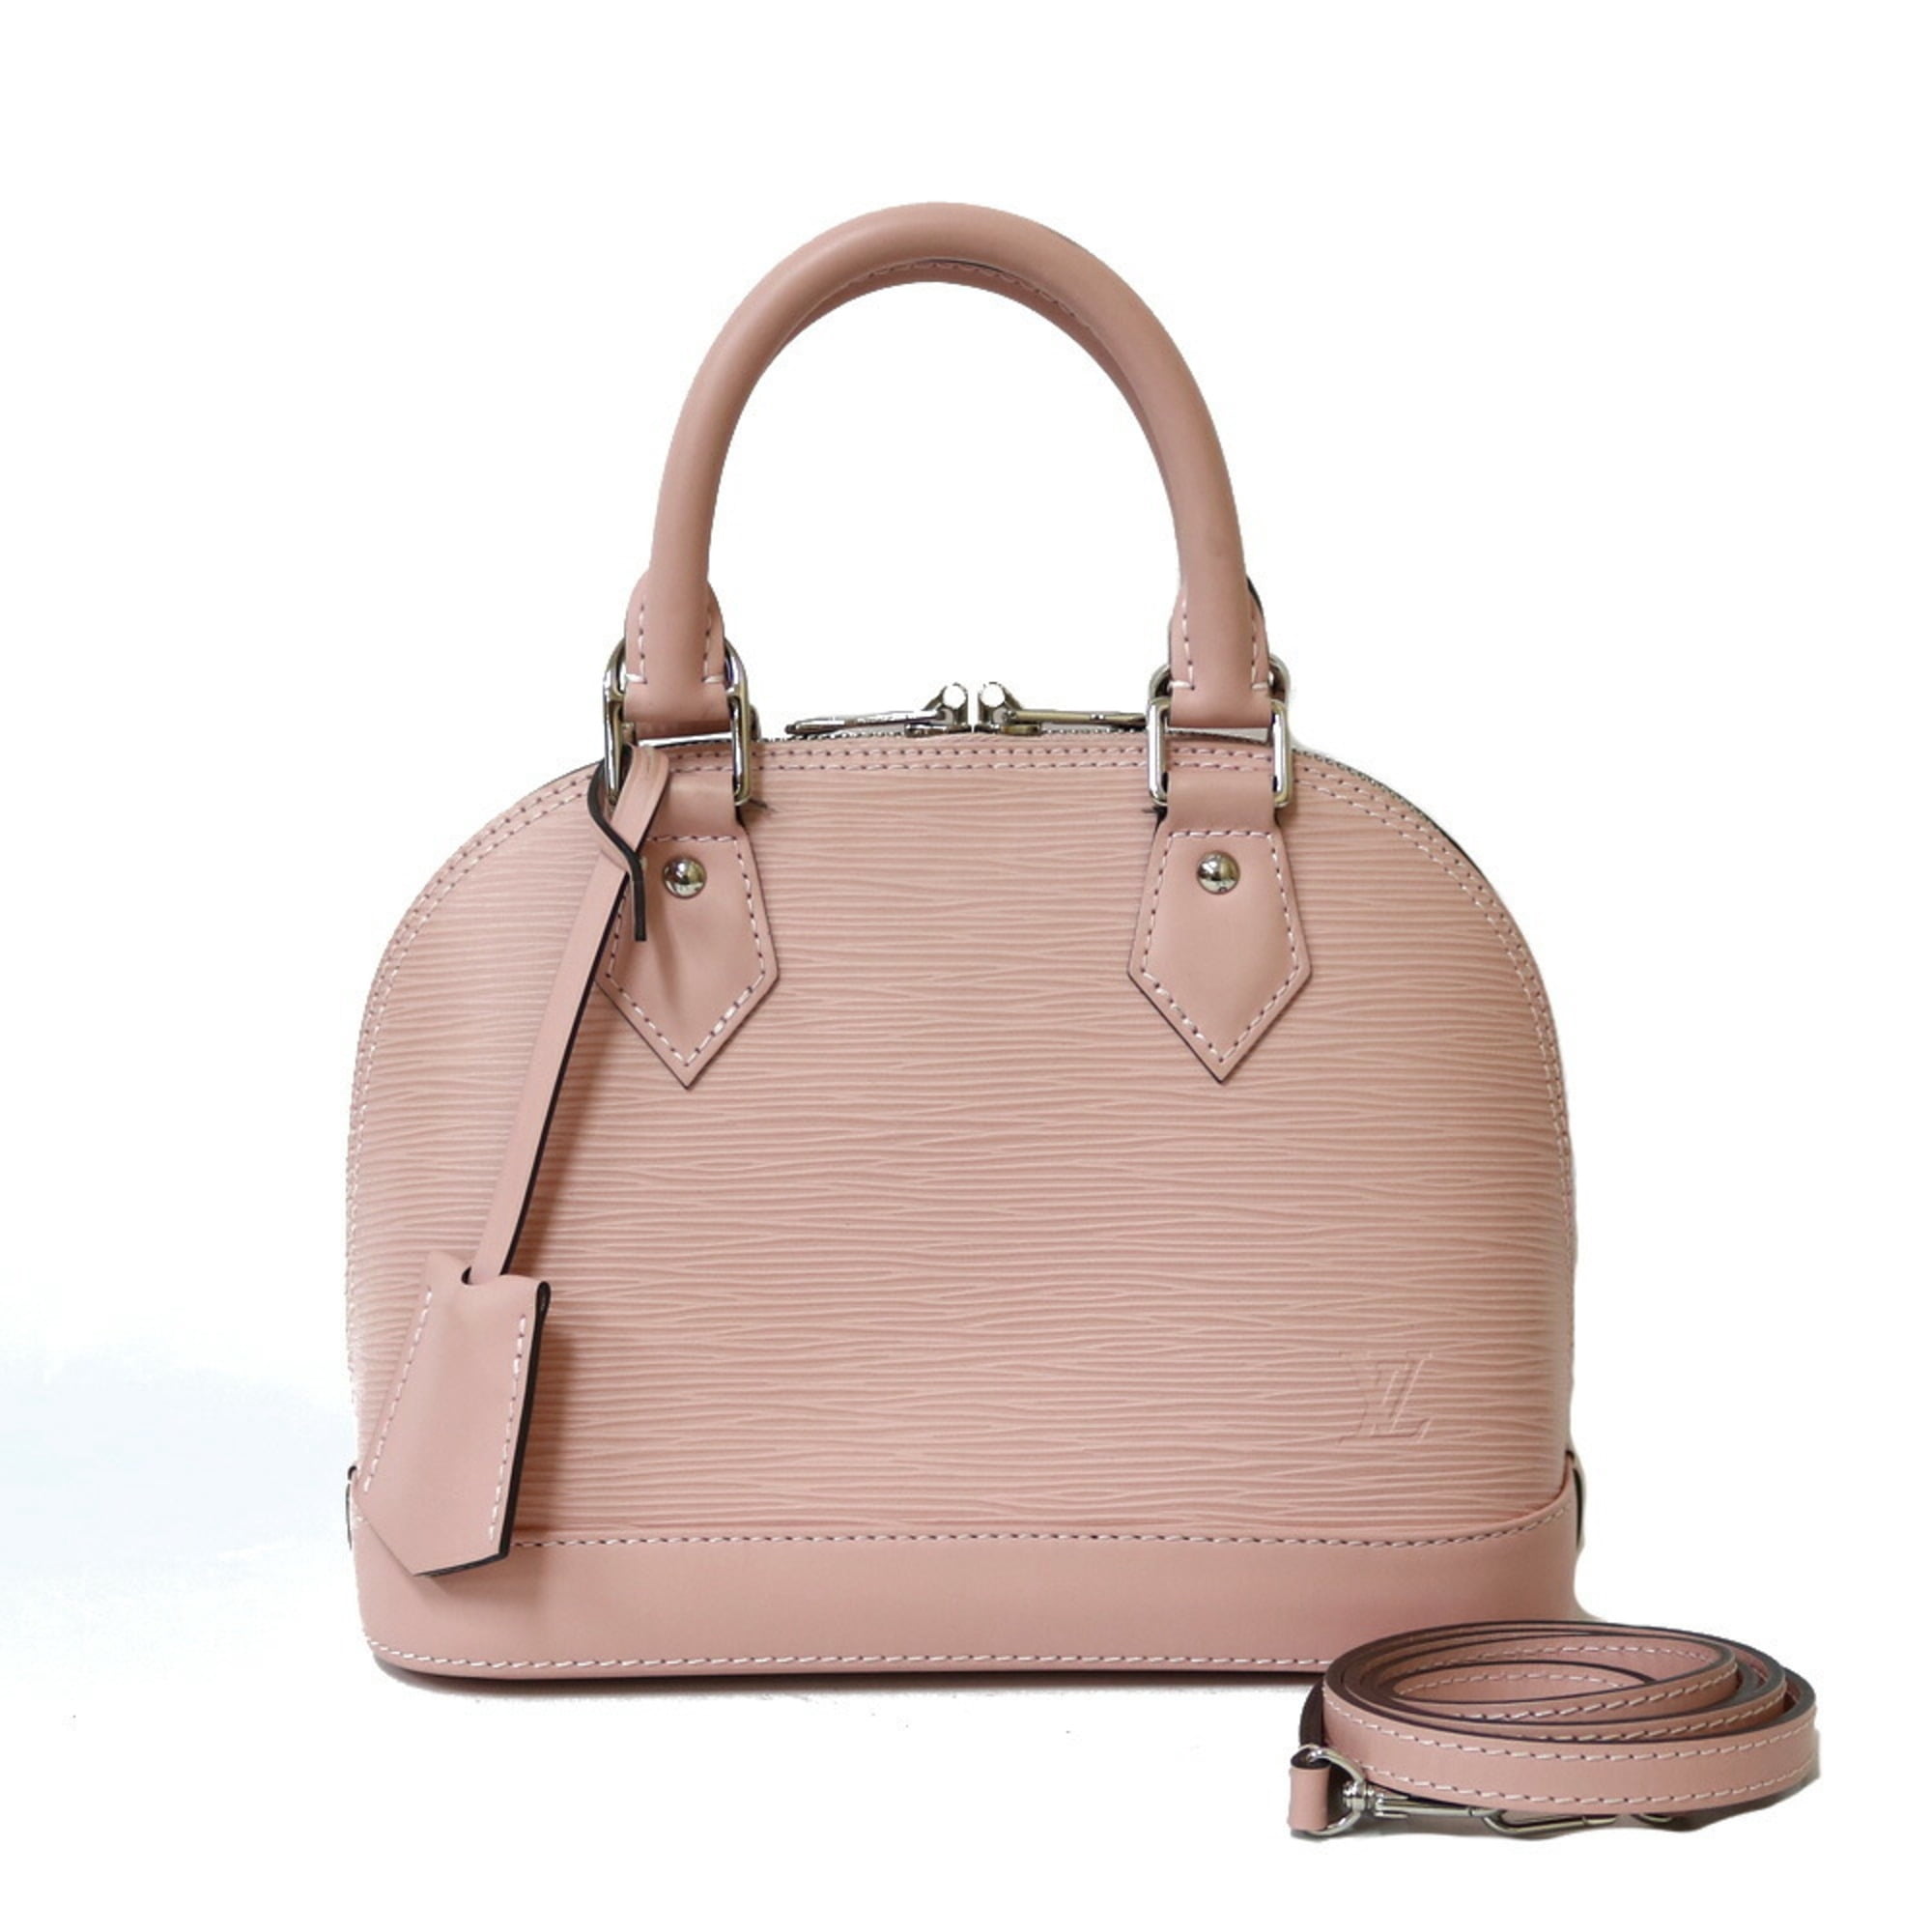 Buy Louis Vuitton Style Men's Chest Bag, New Satchel, Check